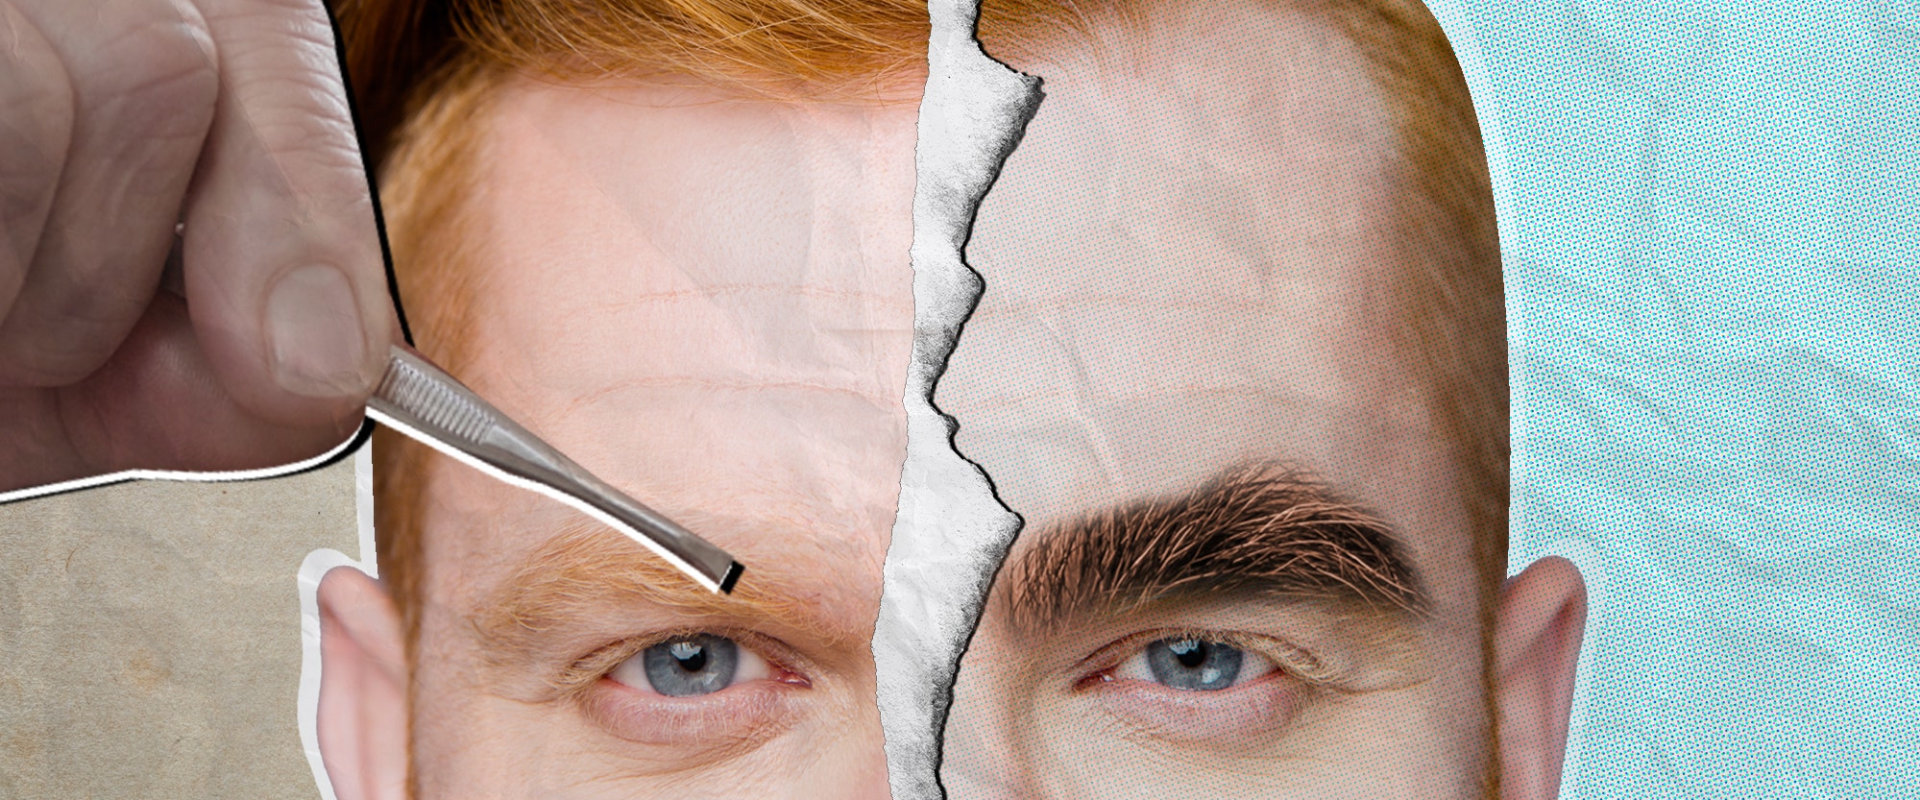 How should men make eyebrows?